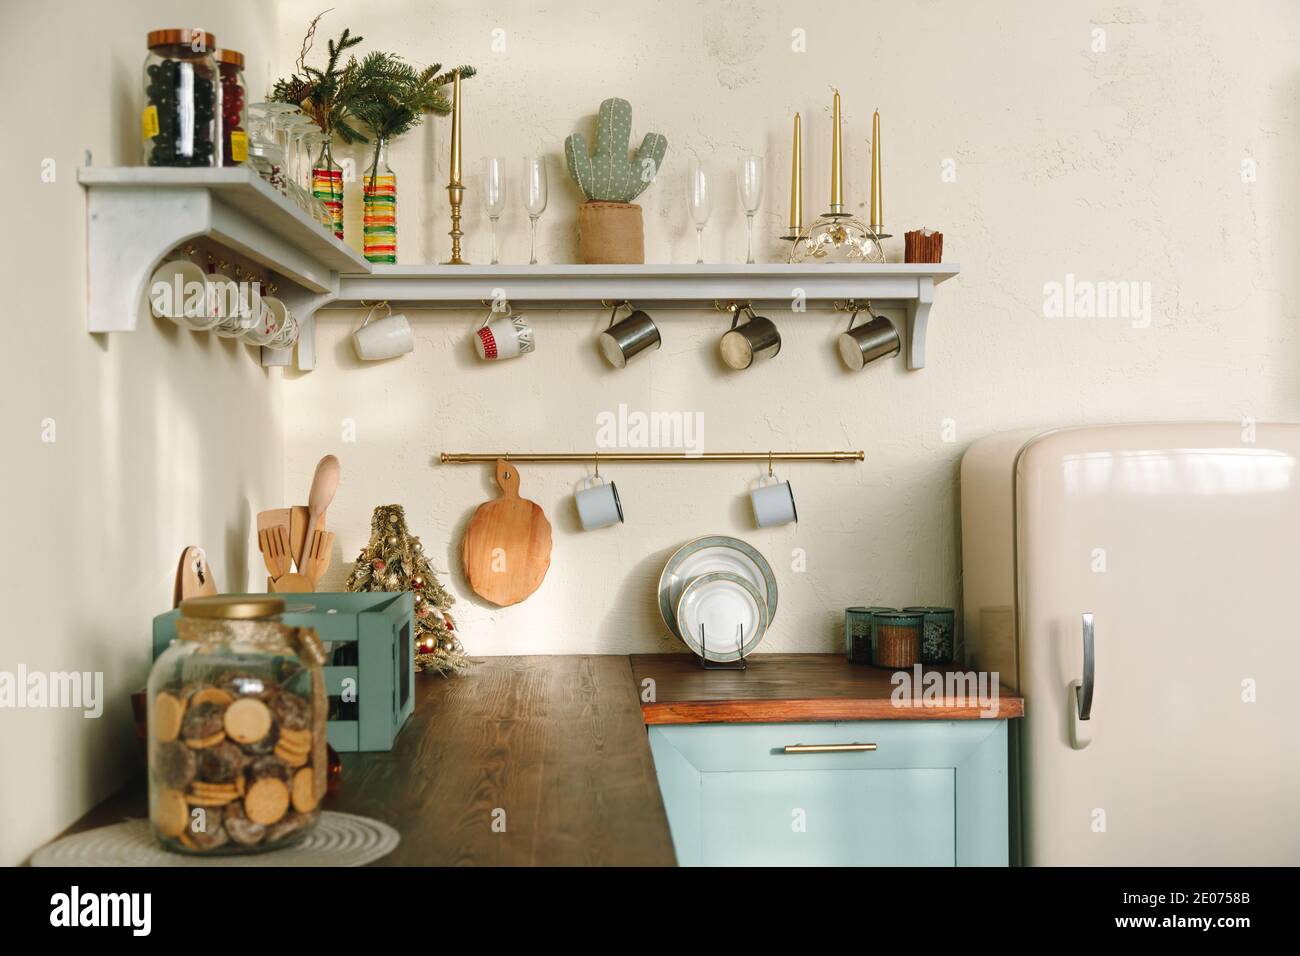 Interni rustici della cucina: Piano di legno con frigorifero retrò, mensole con tazze e utensili, colori pastello tenui. Foto Stock